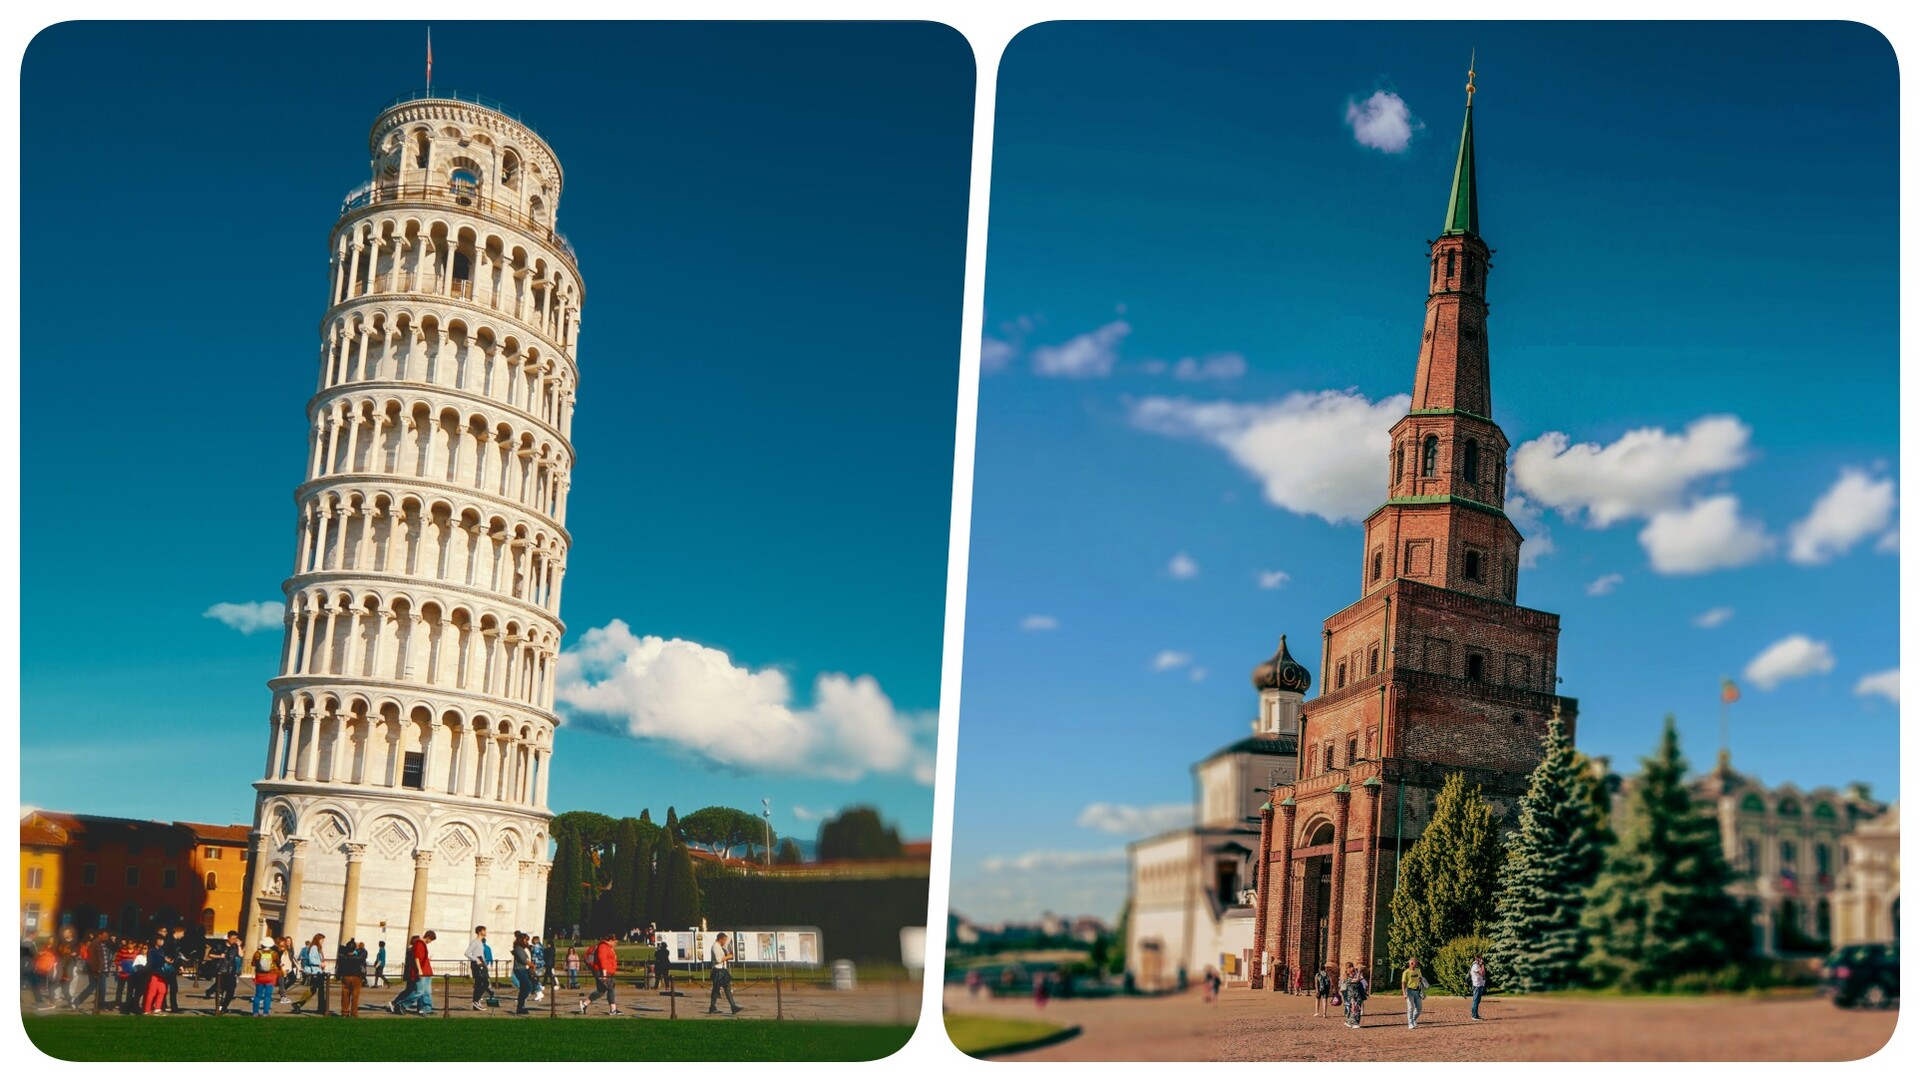 Kosi toranj u Pisi, Italija – Sjujumbikin toranj Kazanjskog kremlja, Tatarstan, Rusija 
